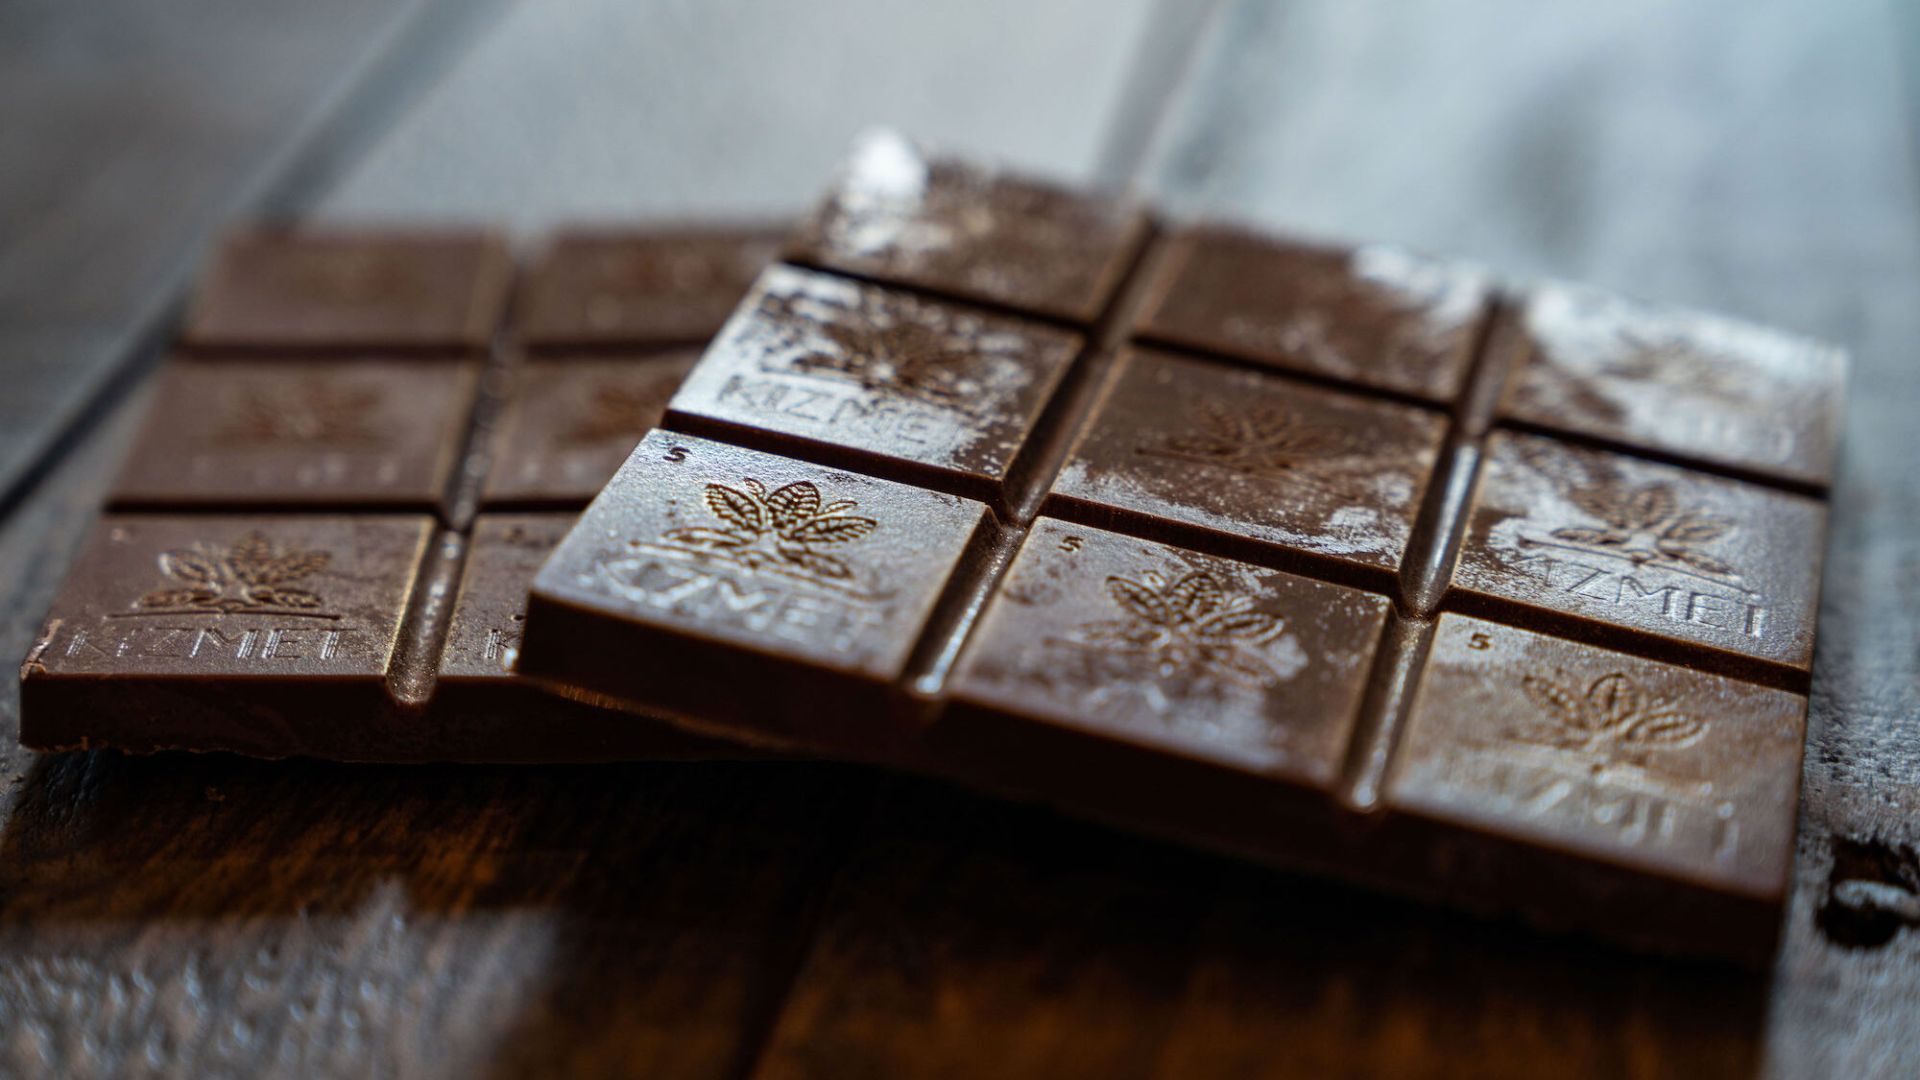 Kizmet Chocolates makes CBD-infused bars.